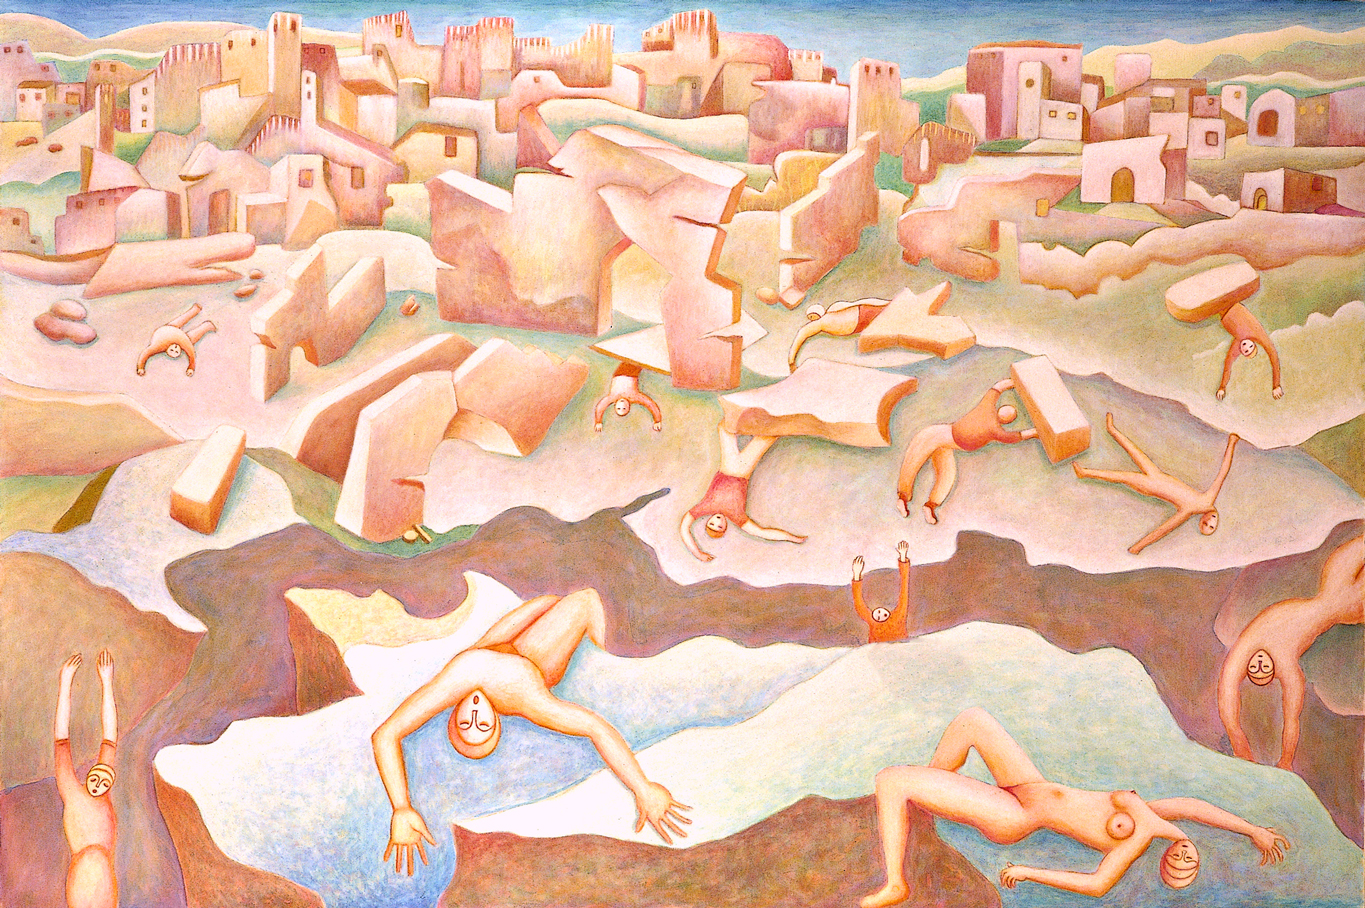 Terremoto a Gemona, Olio su tela, 1975, 100 x 150 cm, C103